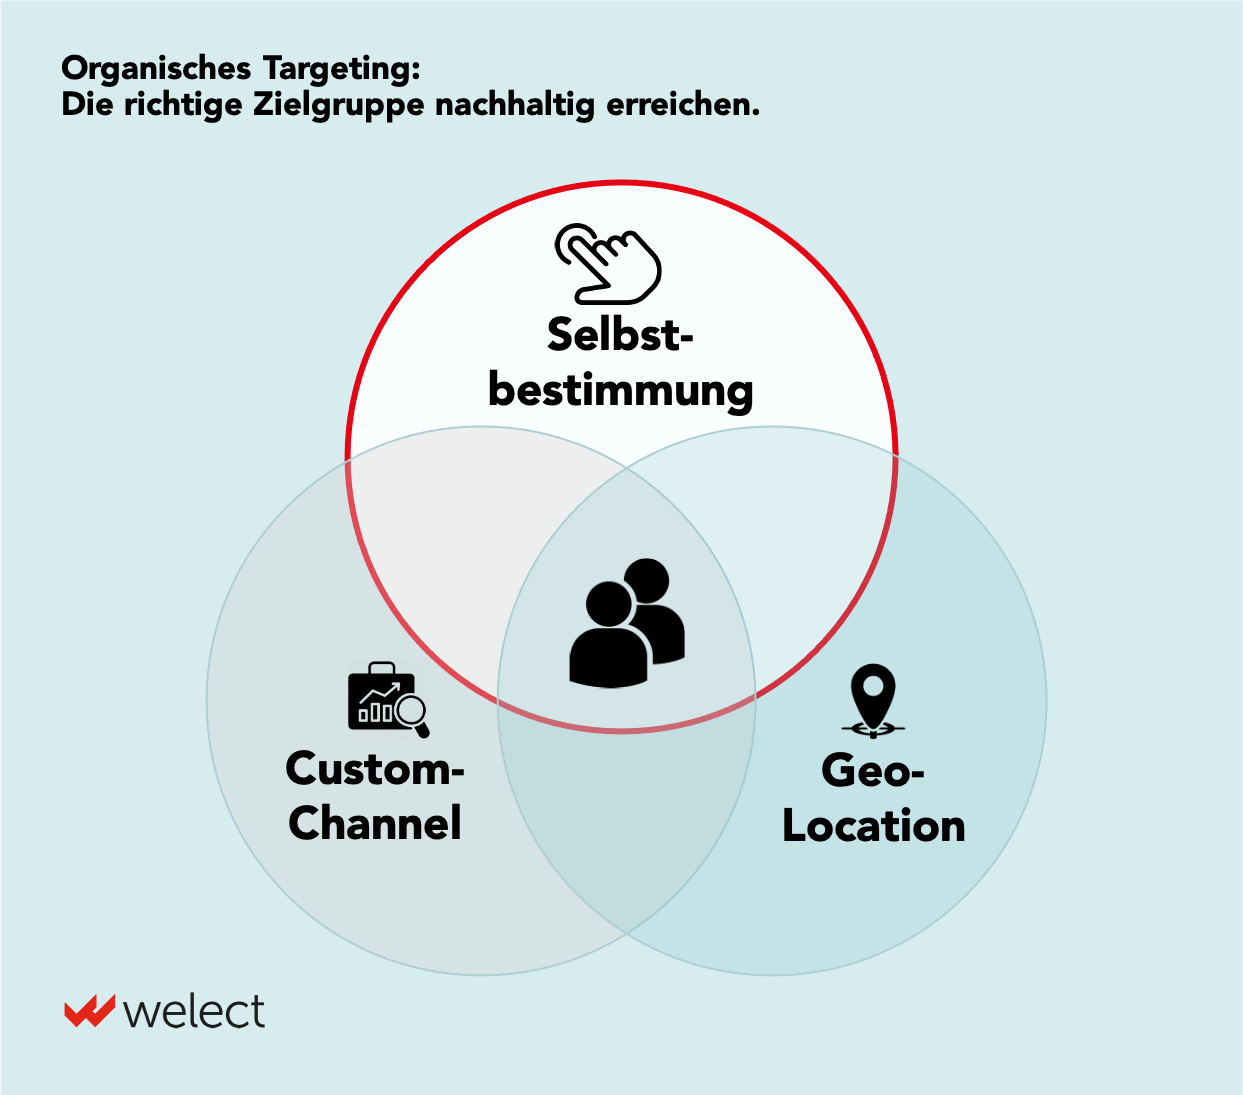 Heading: "Organisches Targeting: Die richtige Zielgruppe nachhaltig erreichen." Gefolgt von einer Darstellung mit drei Kreisen: Zum einen "Customer-Channel", "Geo-Location" und, hervorgehoben: "Selbstbestimmung".